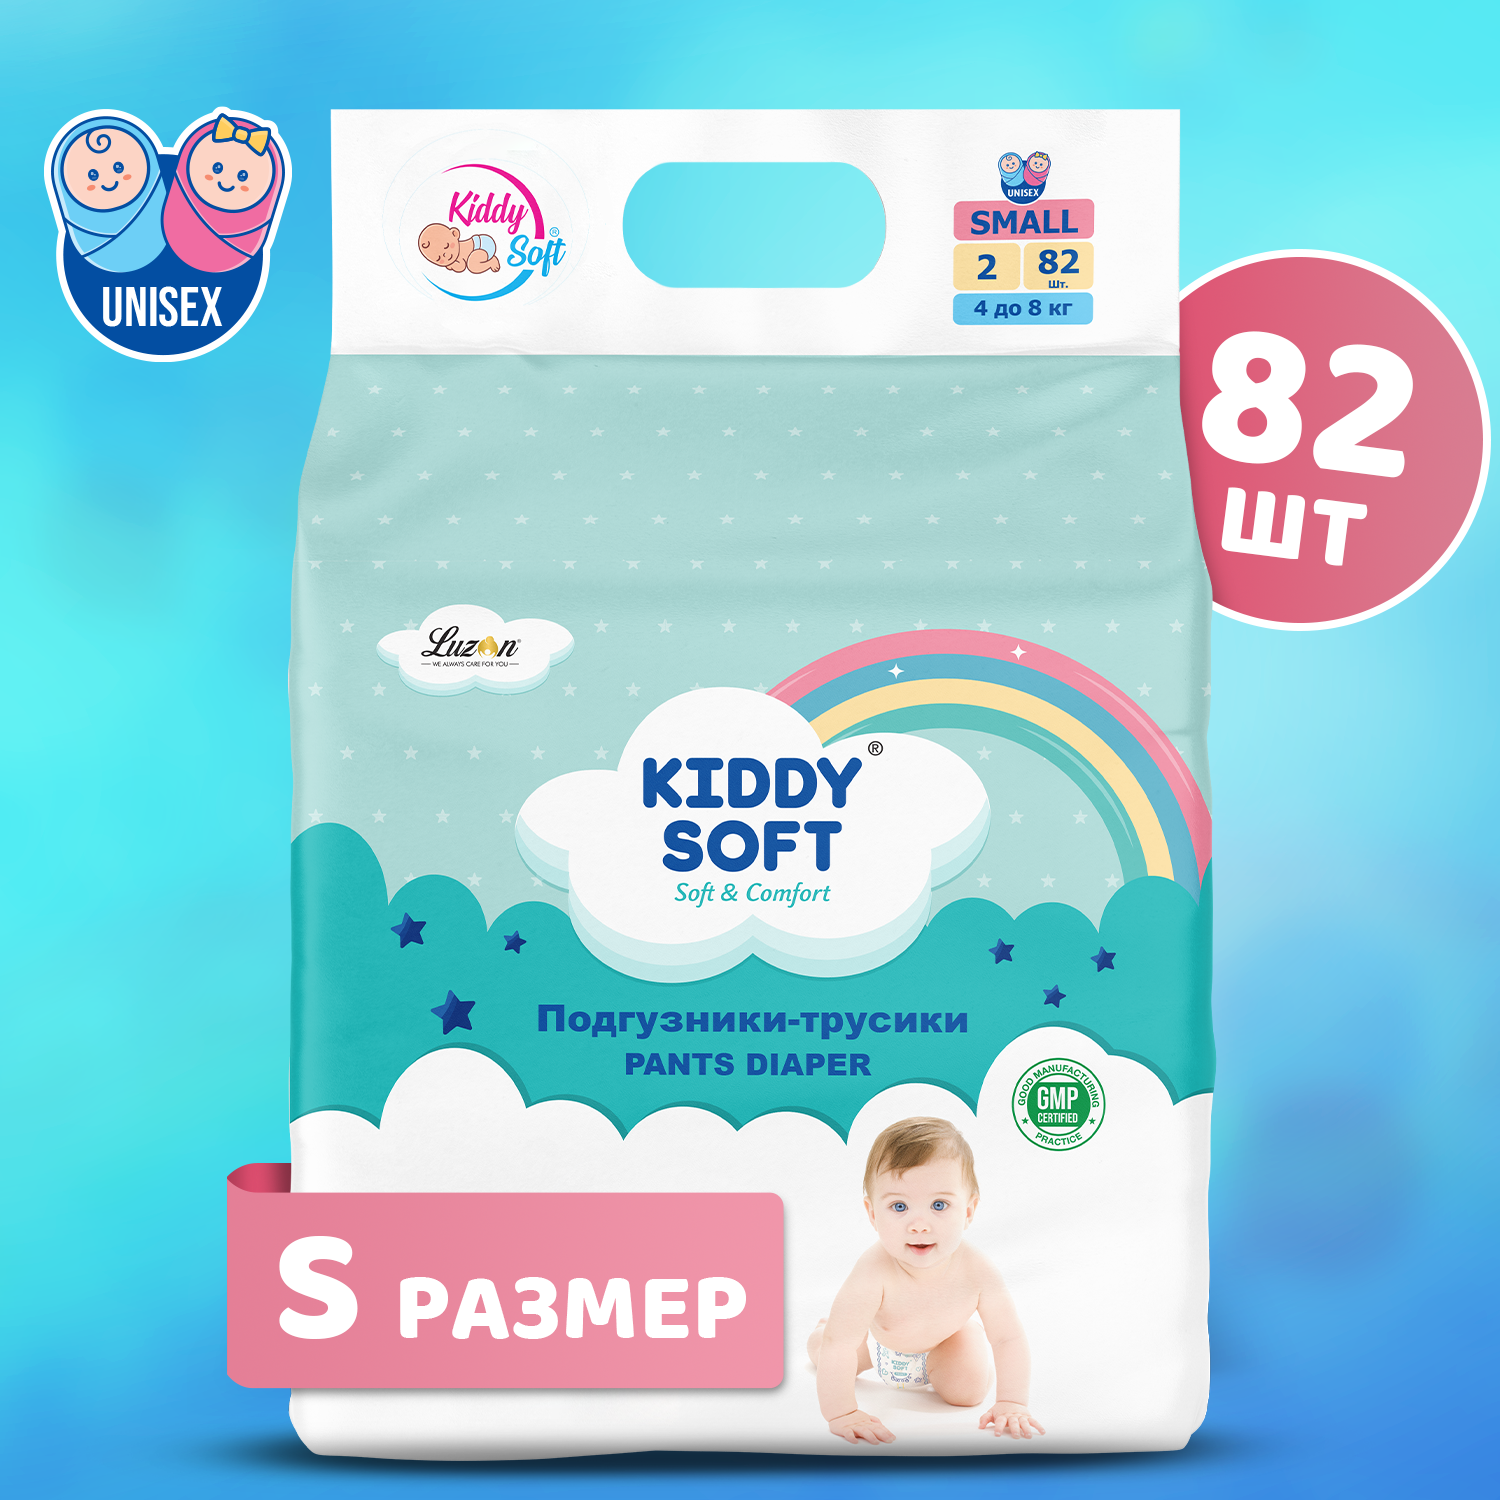 Подгузники-трусики Kiddy Soft с защитой от протекания до 12 часов и индикатором влажности. Размер S, 82 штуки, вес ребенка 4-8 кг.